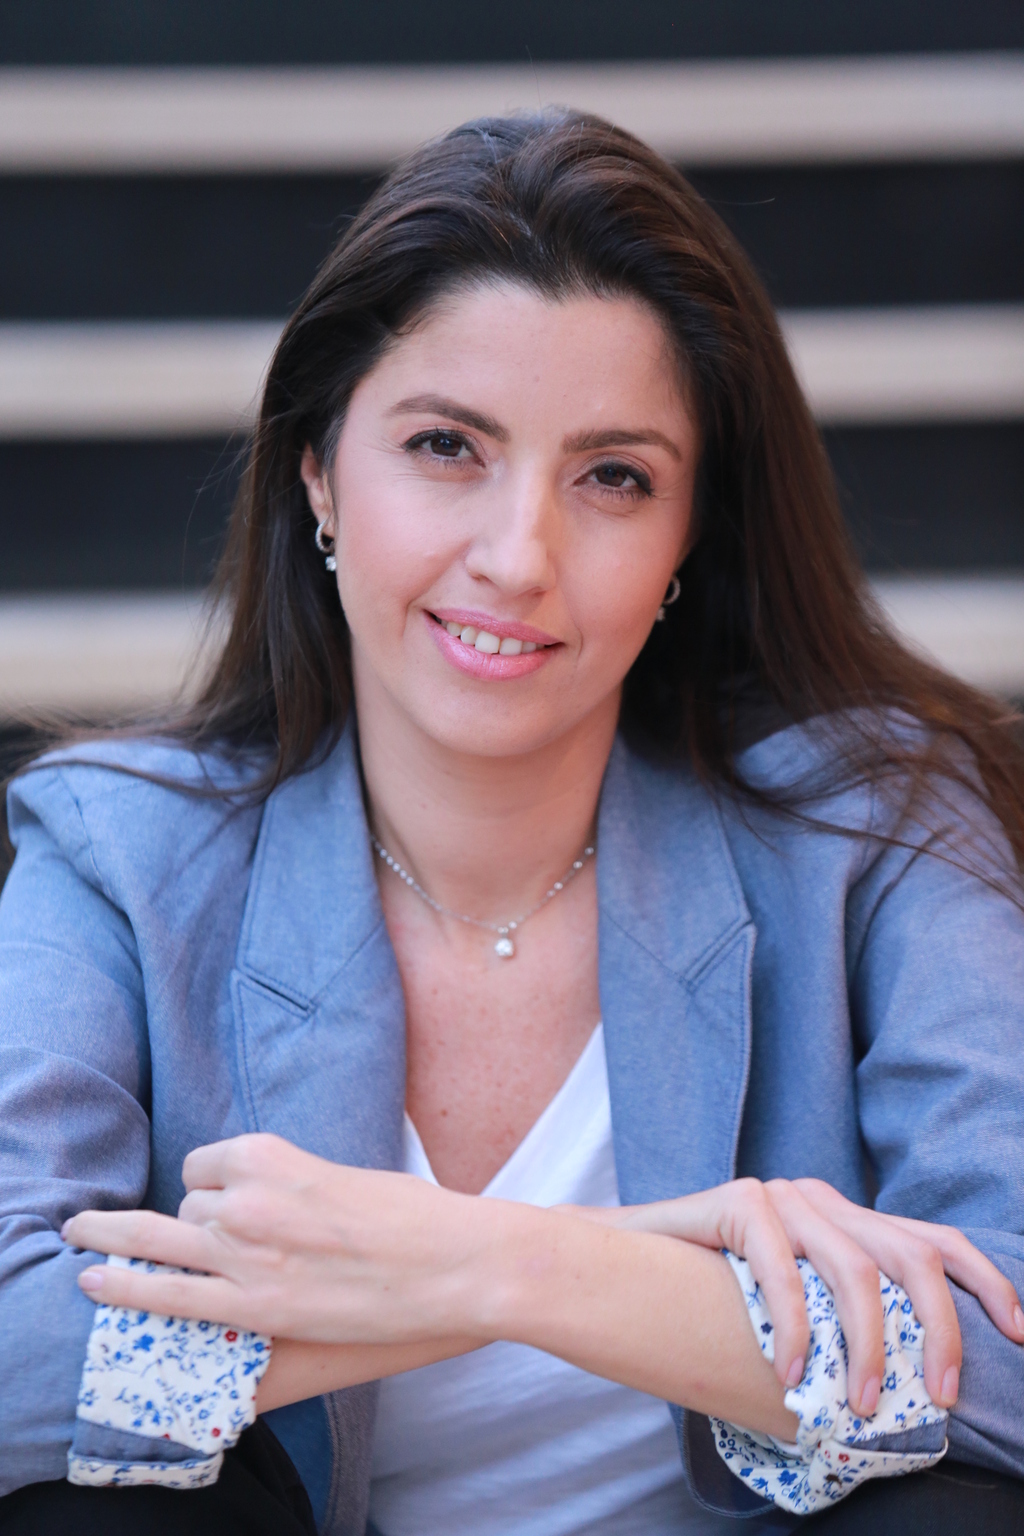 הילה גולדמן אצלאן מייסדת מנכ"לית DiA